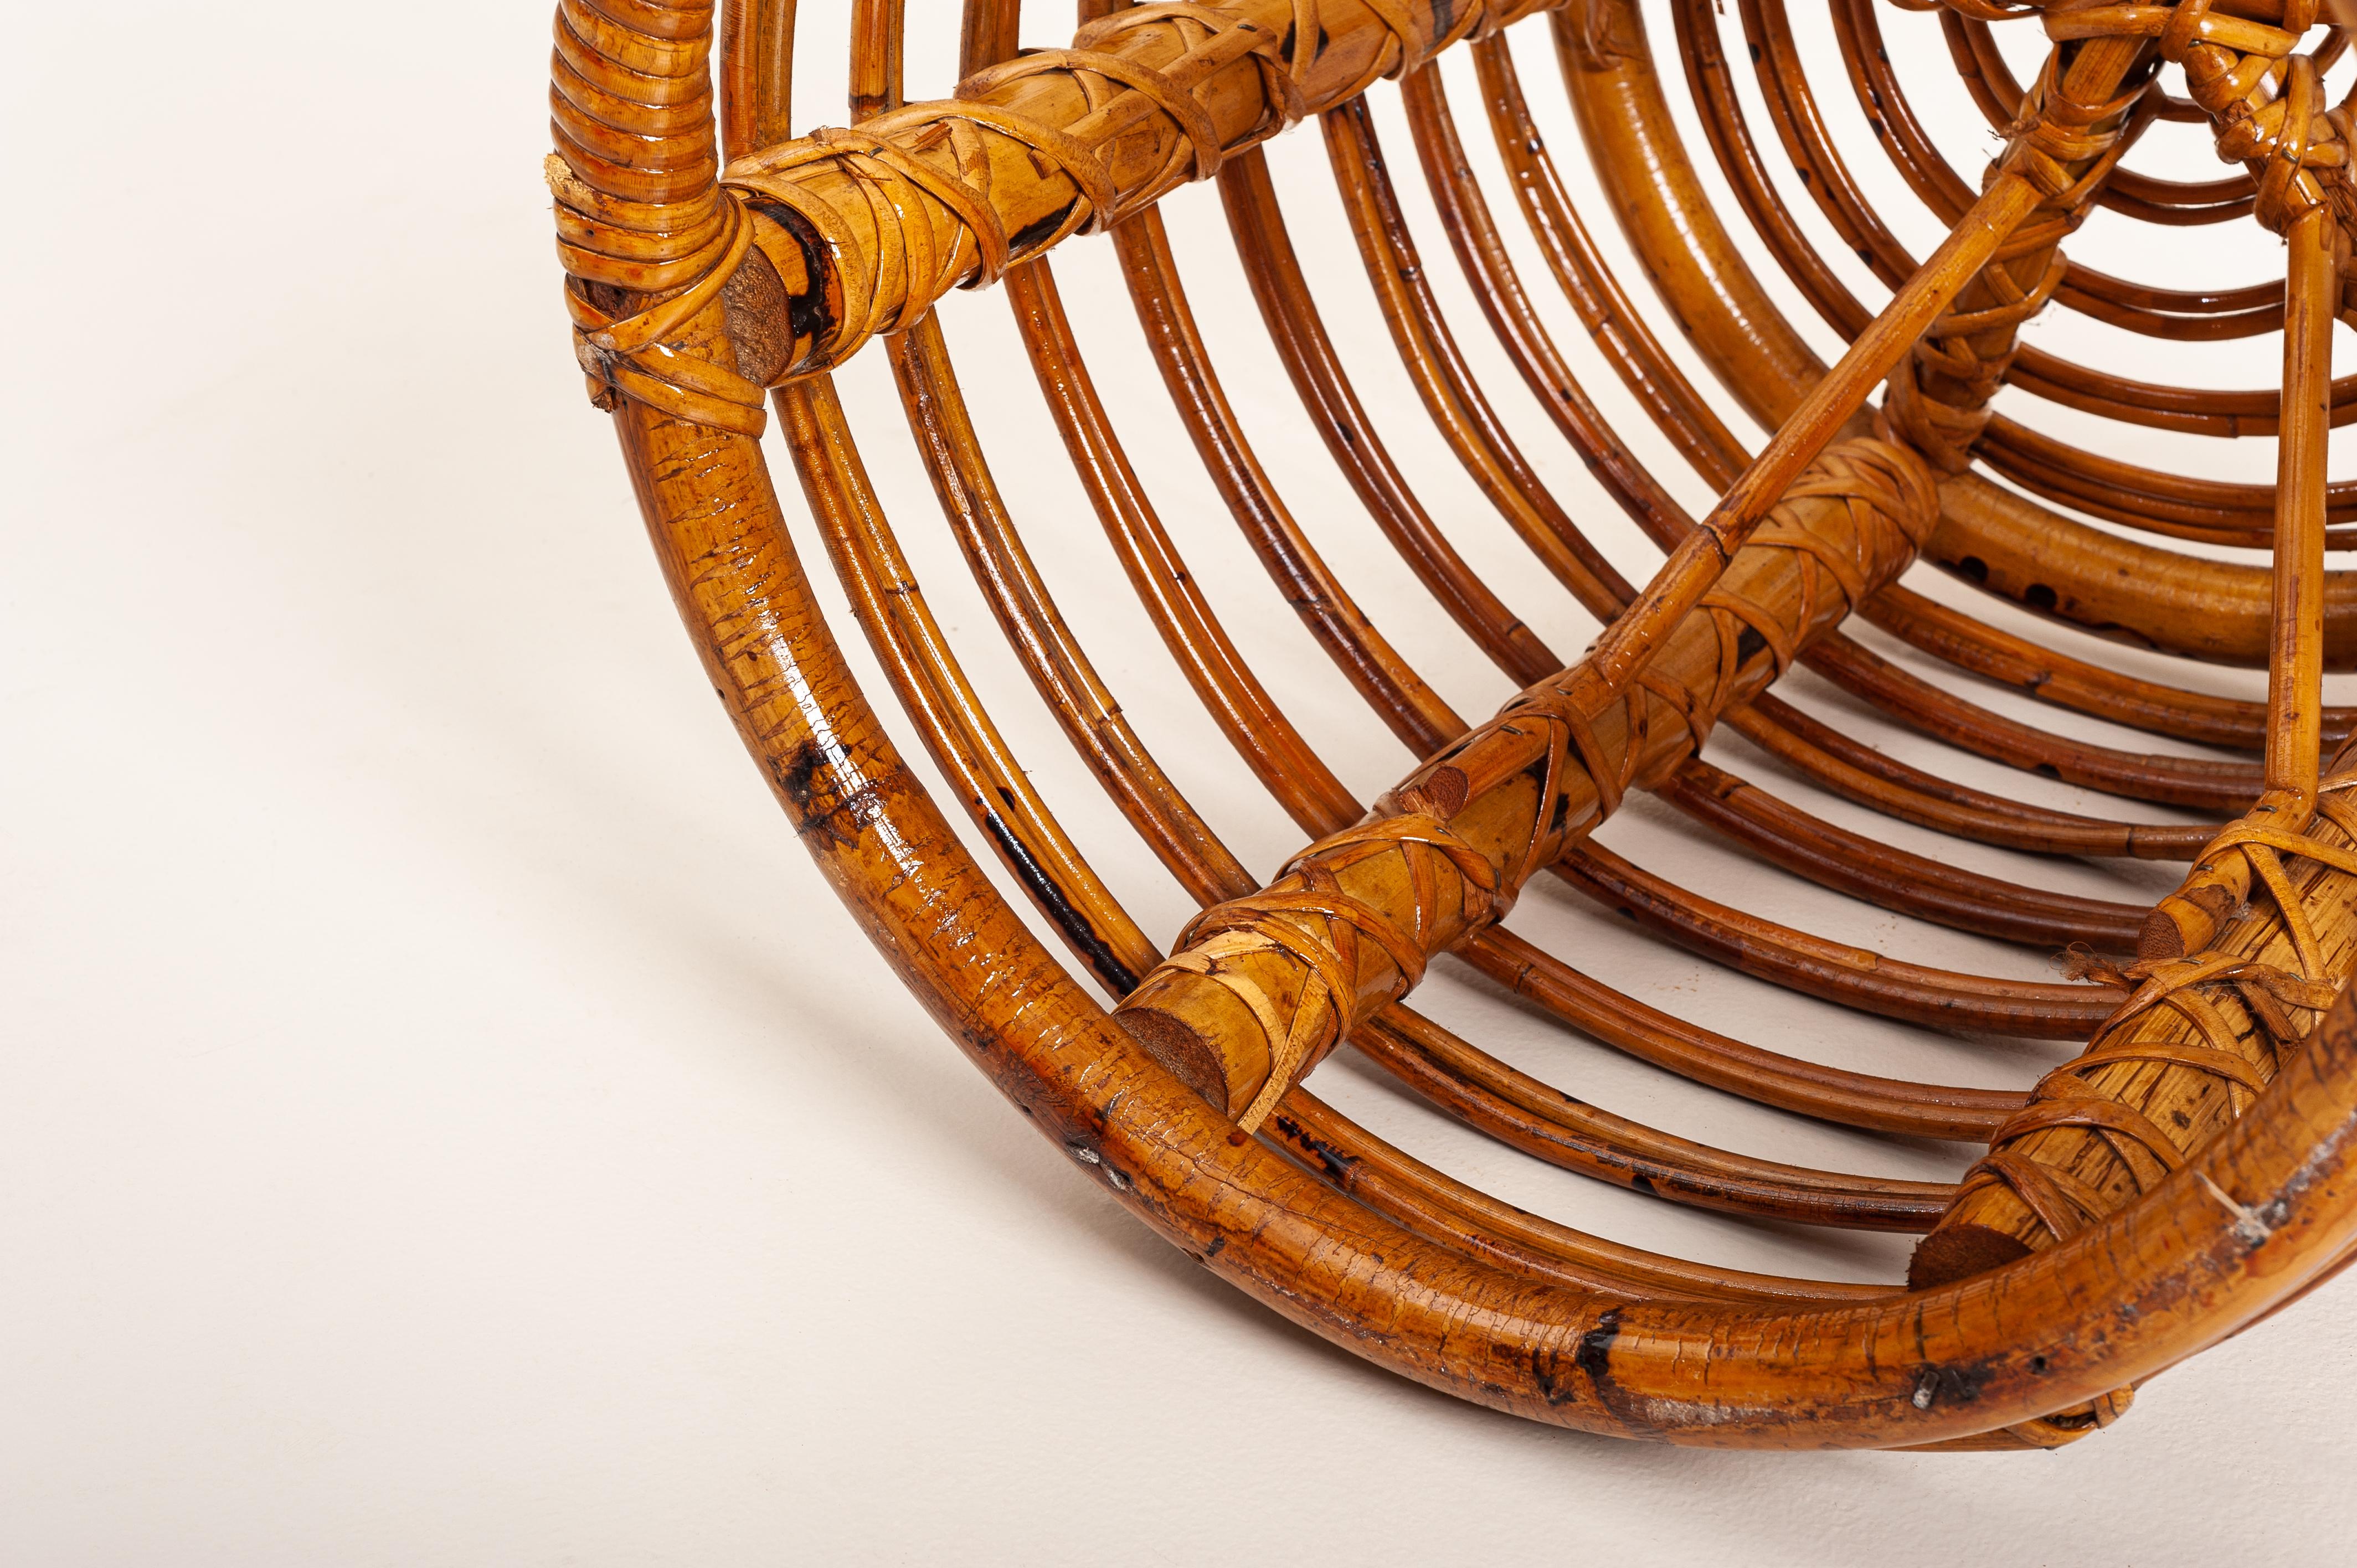 Hand-Knotted Tito Agnoli bamboo circular stool for Bonacina - Italy 1950s